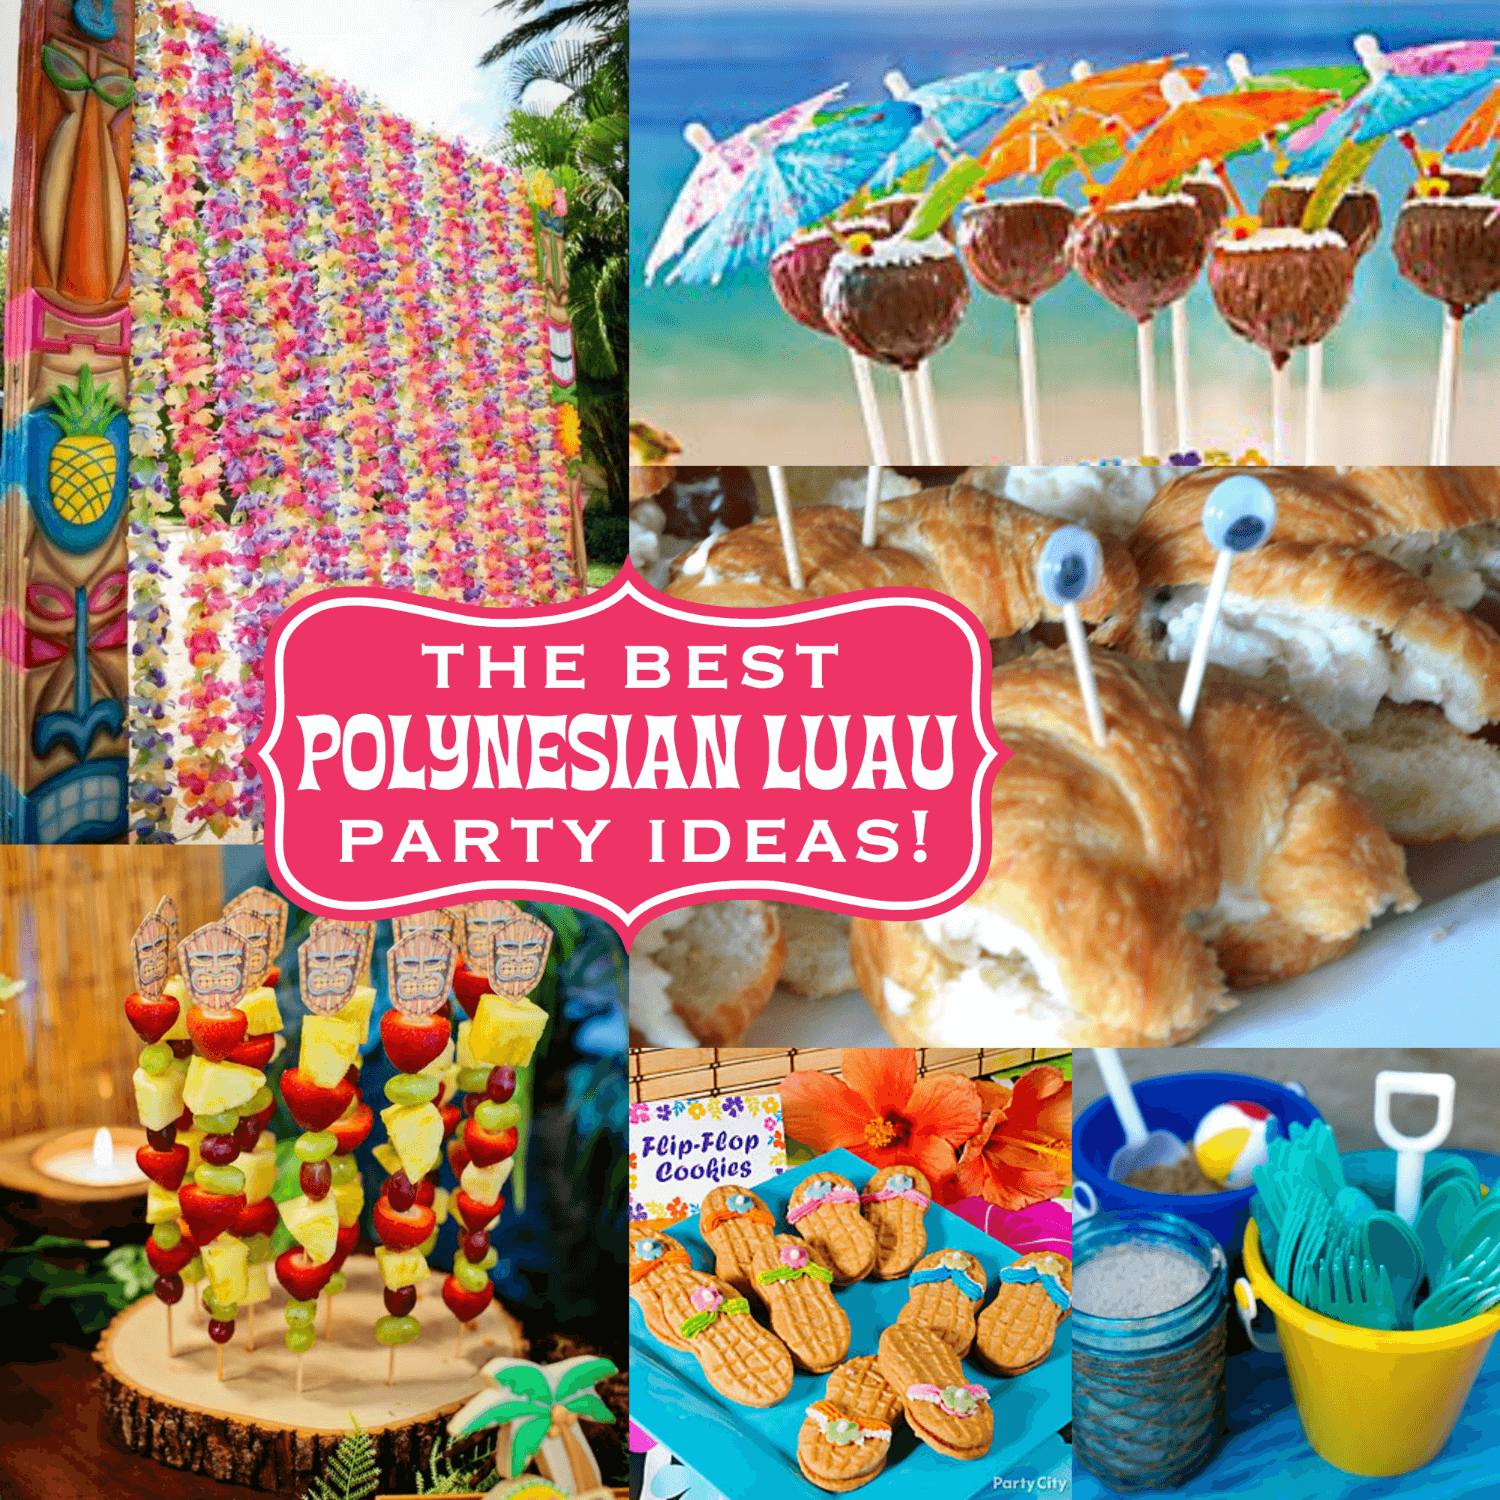 Polynesian luau party ideas -